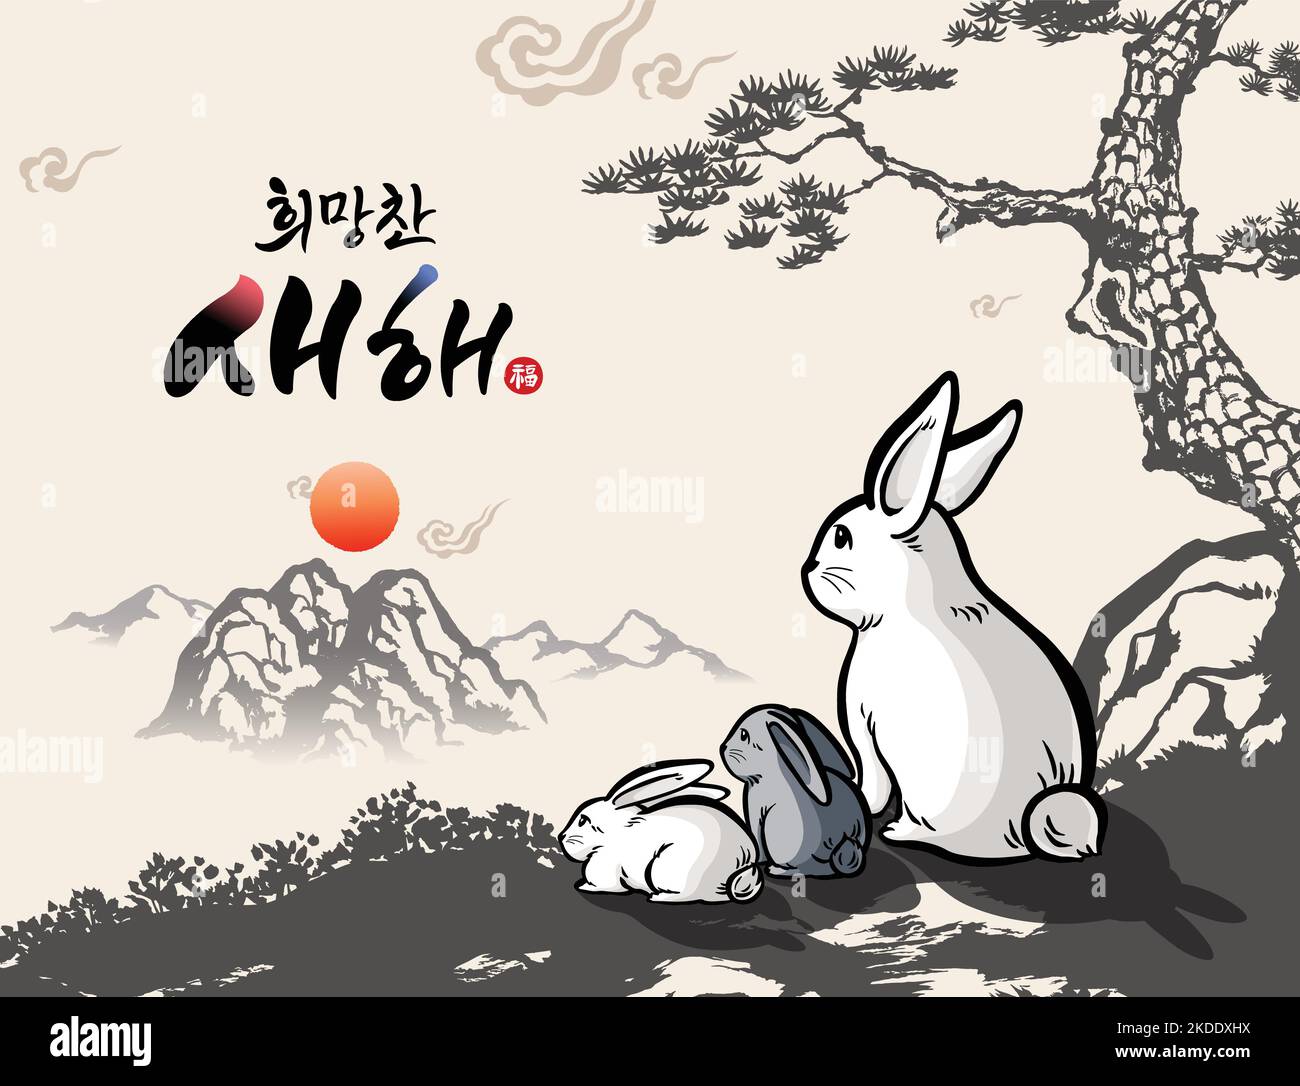 Kaninchenfamilie beim Sonnenaufgang im koreanischen Neujahr, traditionelle Kalligraphie, Pinselmalerei, Konzeptdesign. Hoffnungsvolles neues Jahr, koreanische Übersetzung. Stock Vektor